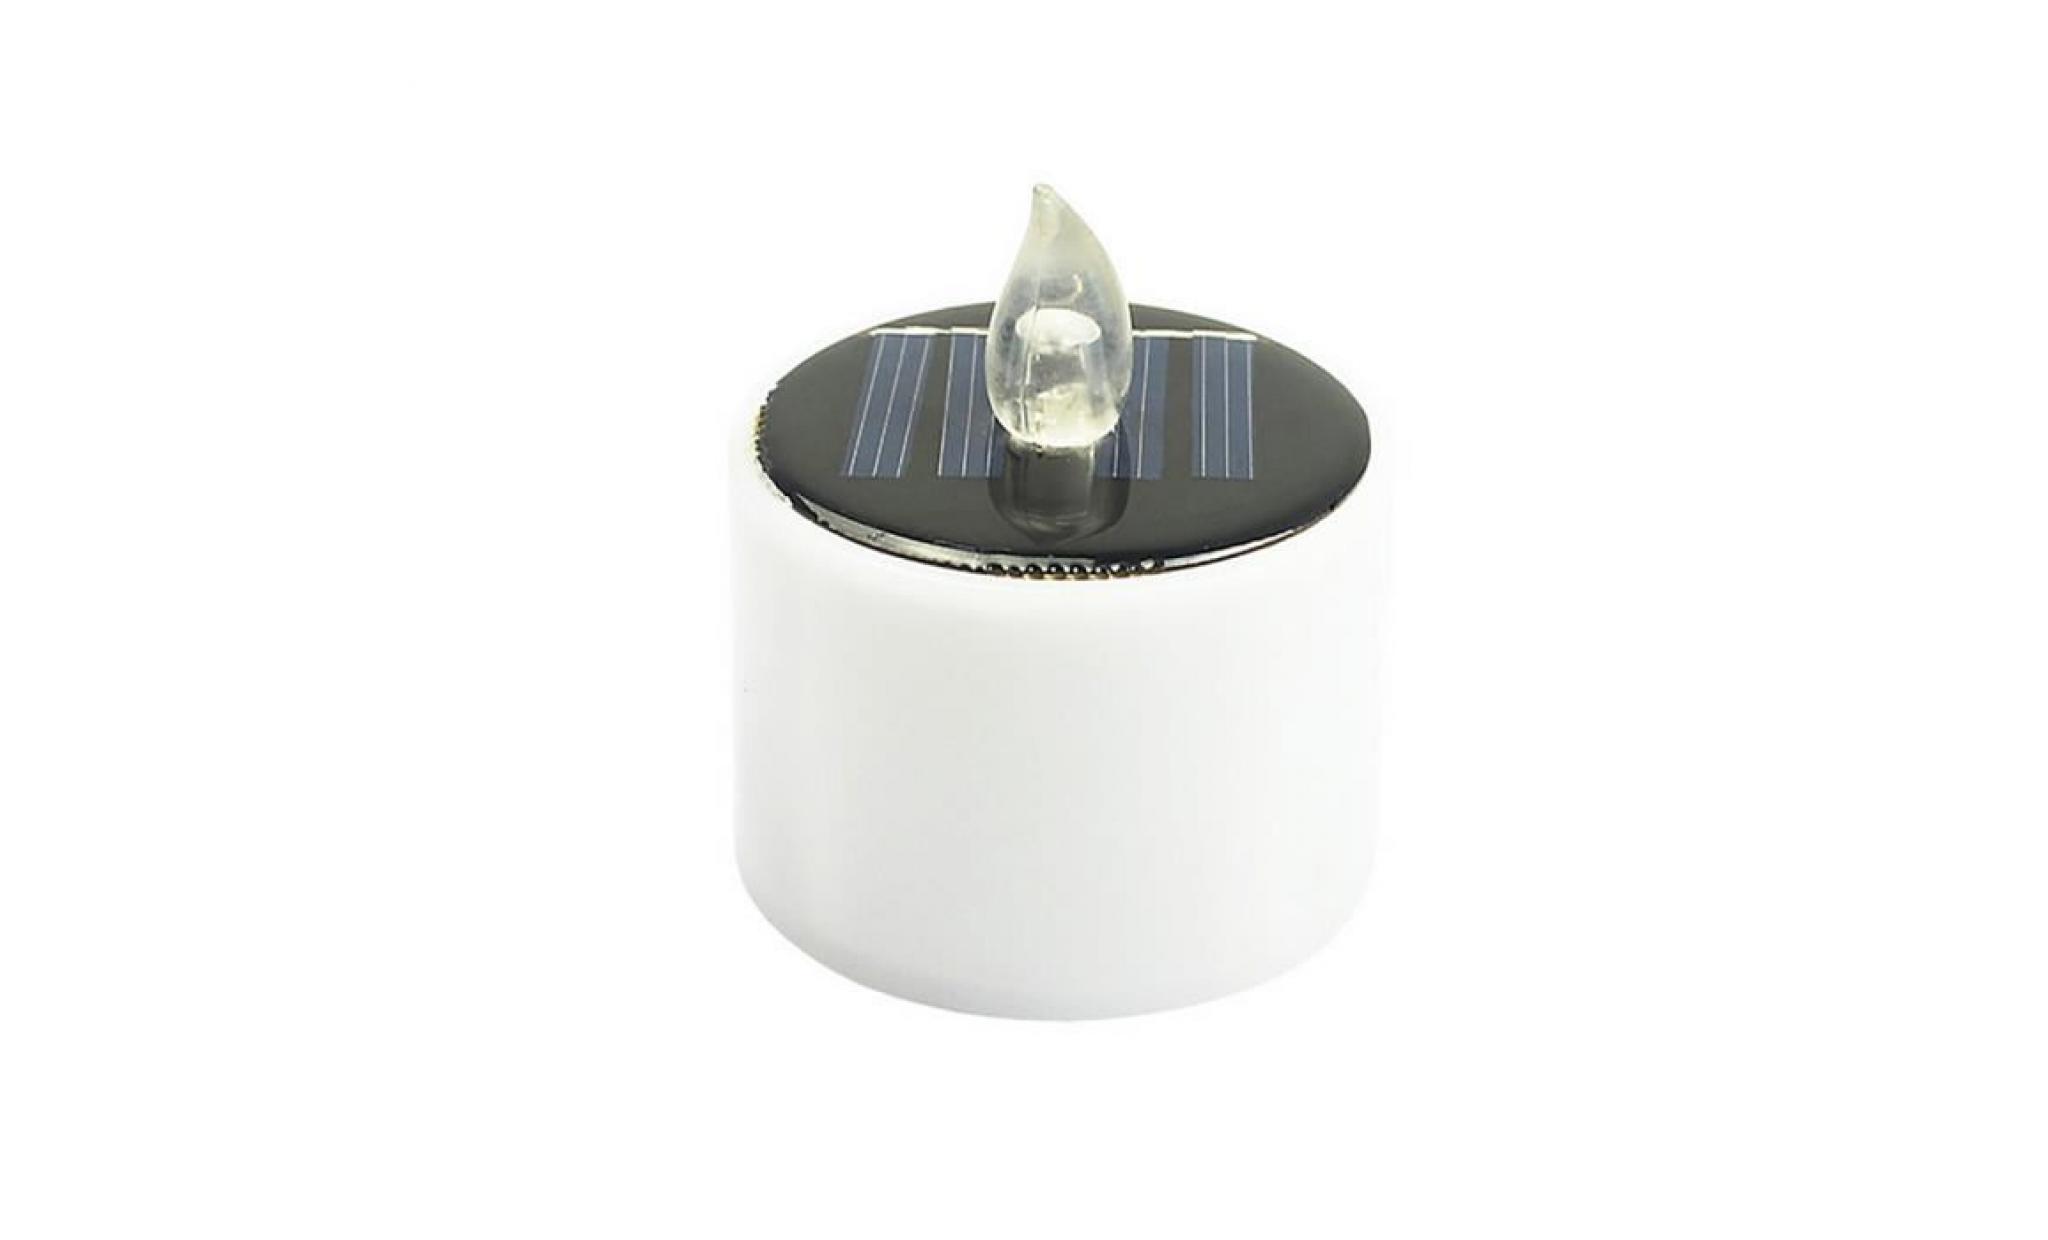 iportan® 1pcs solaire puissance led bougies sans flamme lampe électronique solaire lumières led thé blanc chaud_4262 pas cher